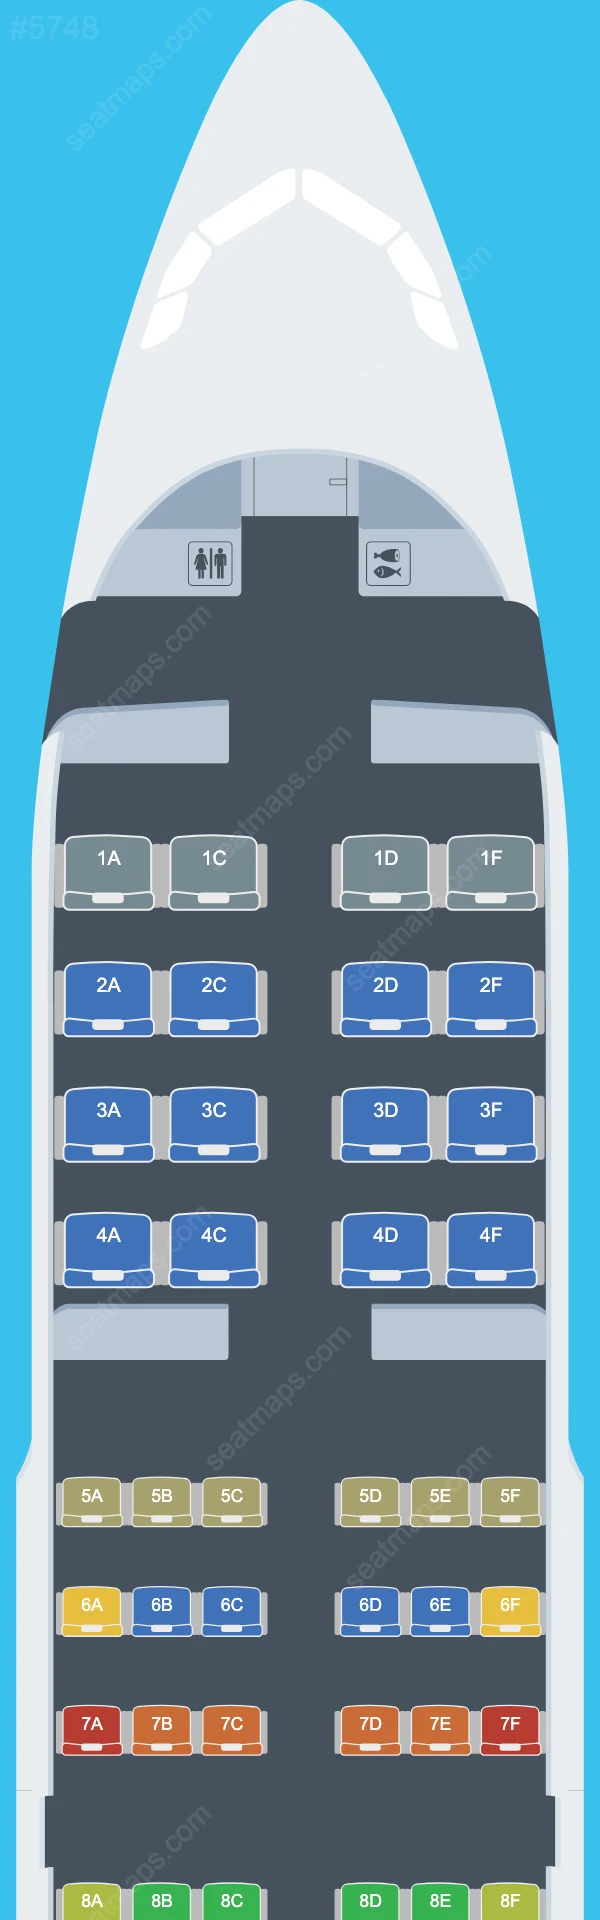 Druk Air Airbus A319 Seat Maps A319-100